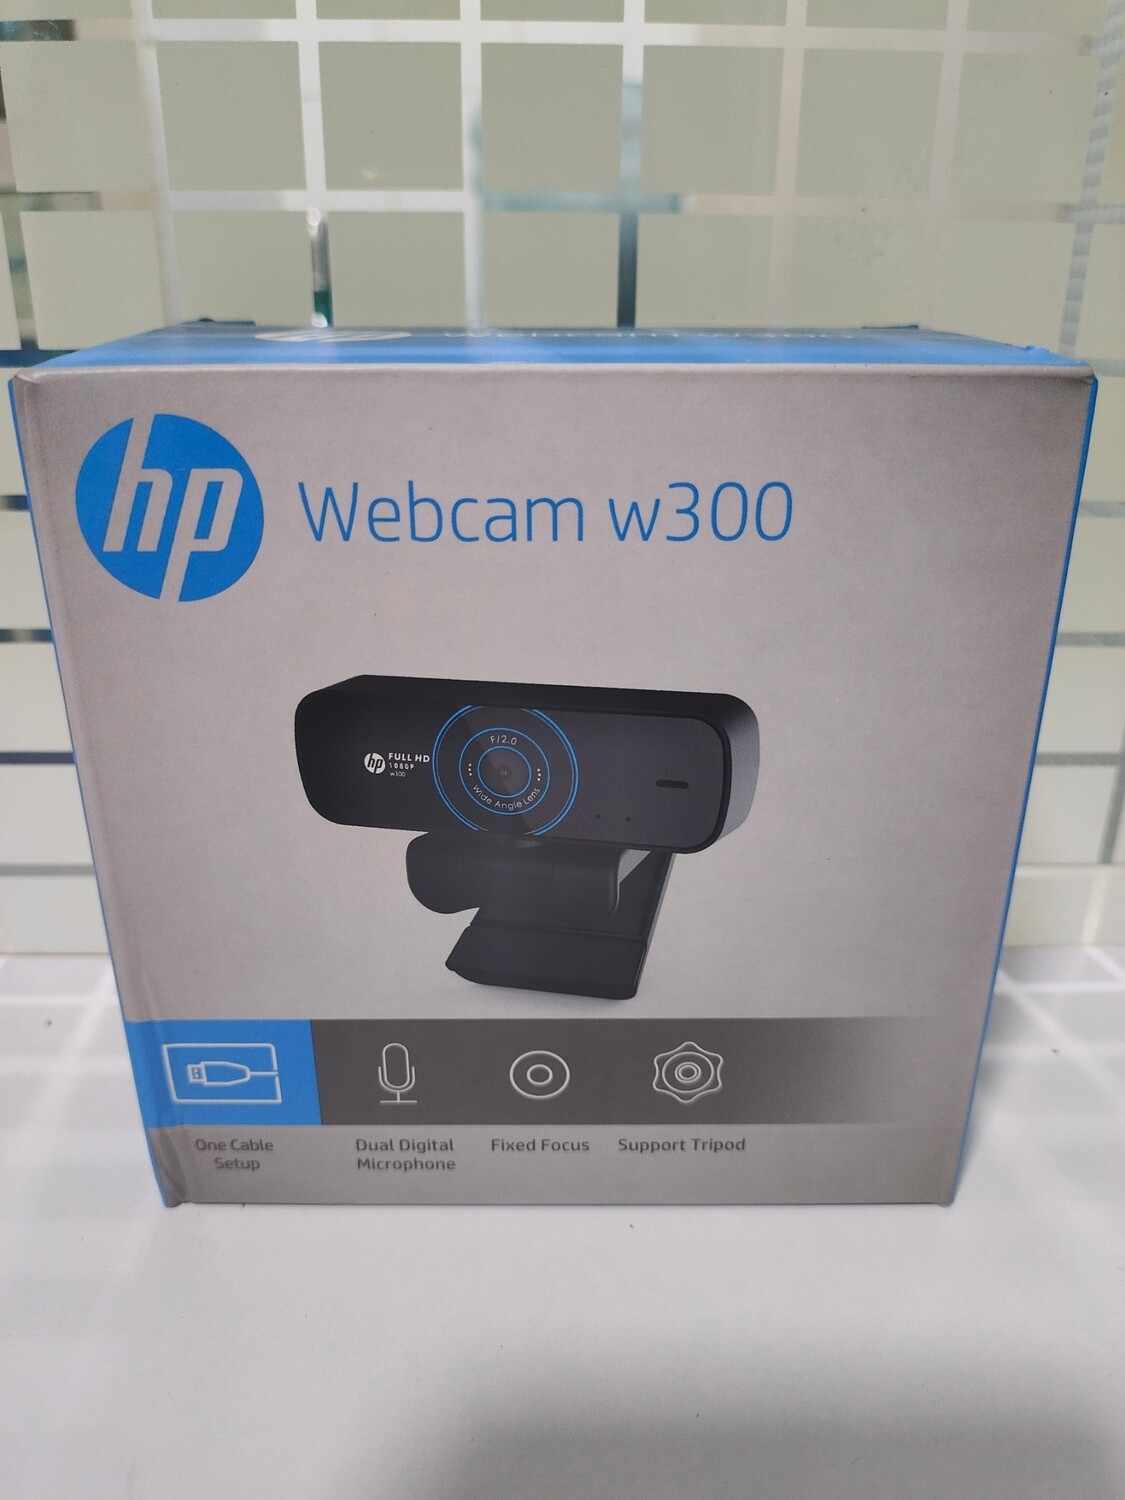 HP w300 Webcam, 1080p/30 Fps FHD